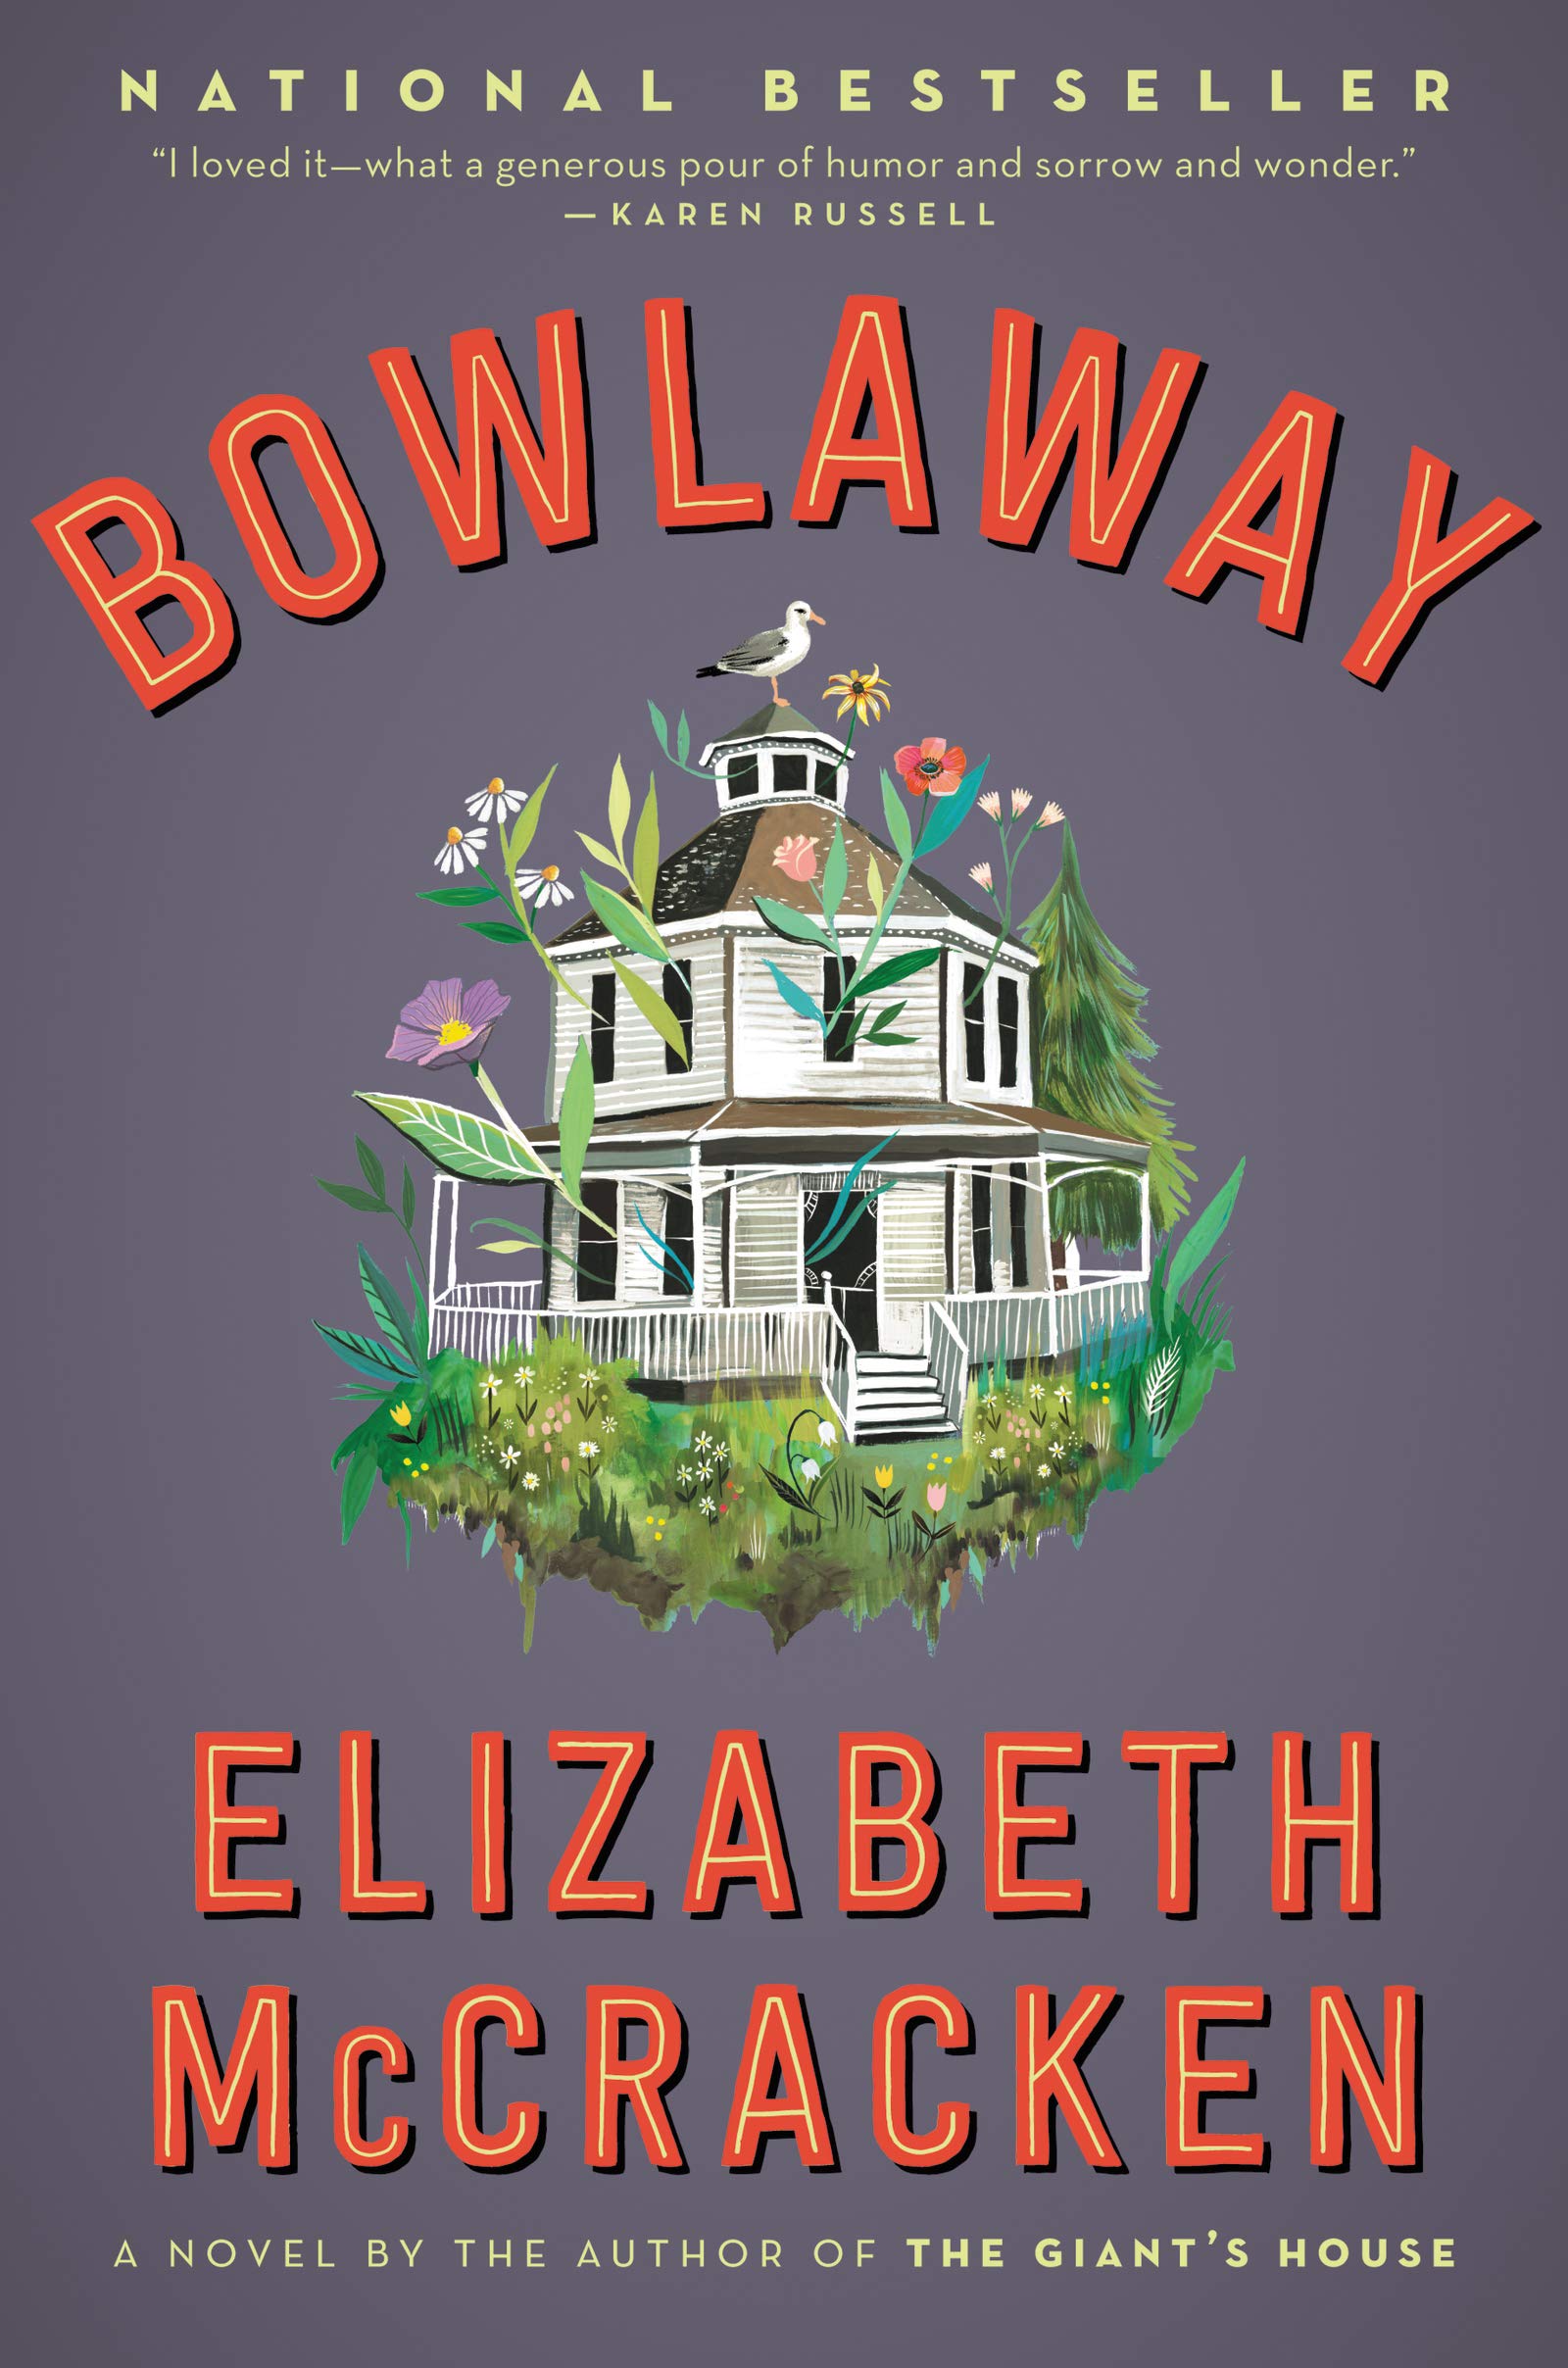 bowlaway book